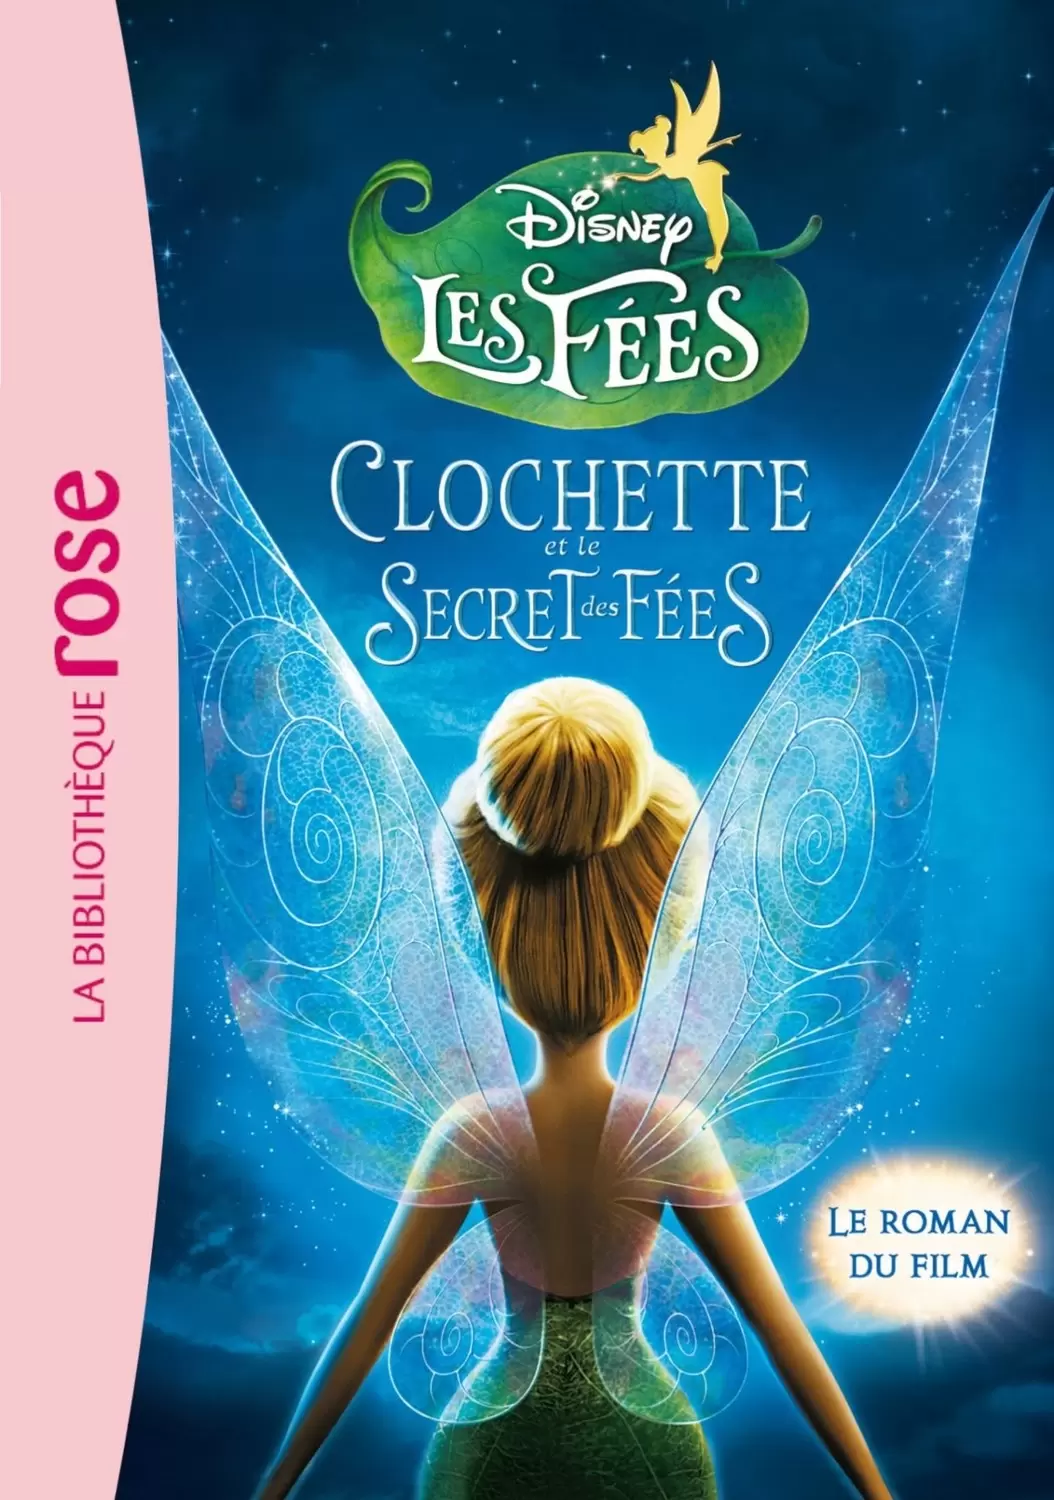 La Fée Clochette - Clochette et le Secret des fées - Le roman du film